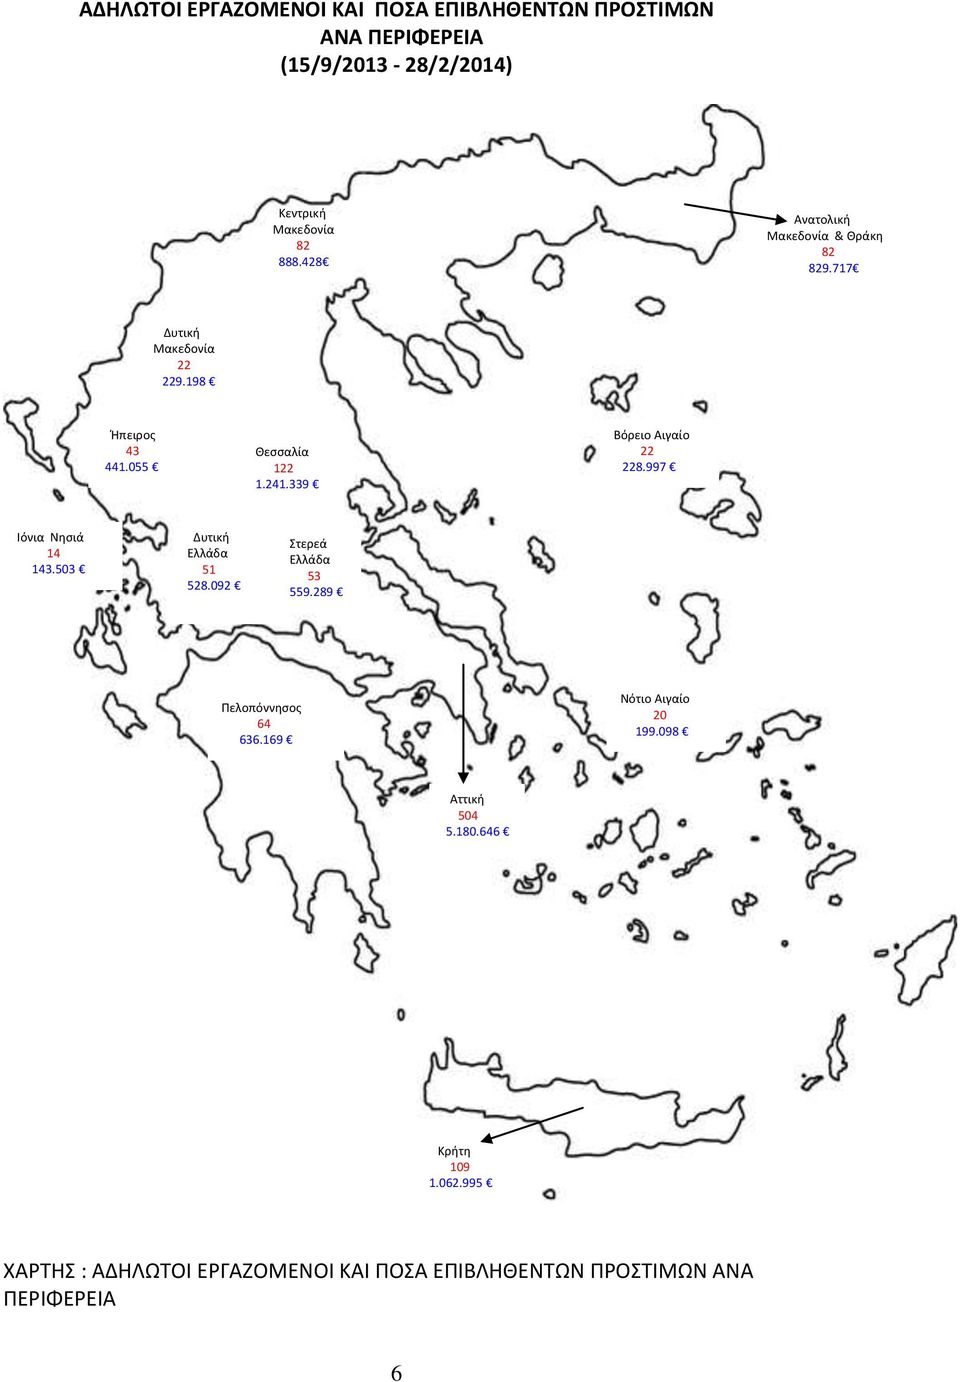 339 Βόρειο Αιγαίο 22 228.997 Ιόνια Νησιά 14 143.503 Δυτική Ελλάδα 51 528.092 Στερεά Ελλάδα 53 559.289 Πελοπόννησος 64 636.